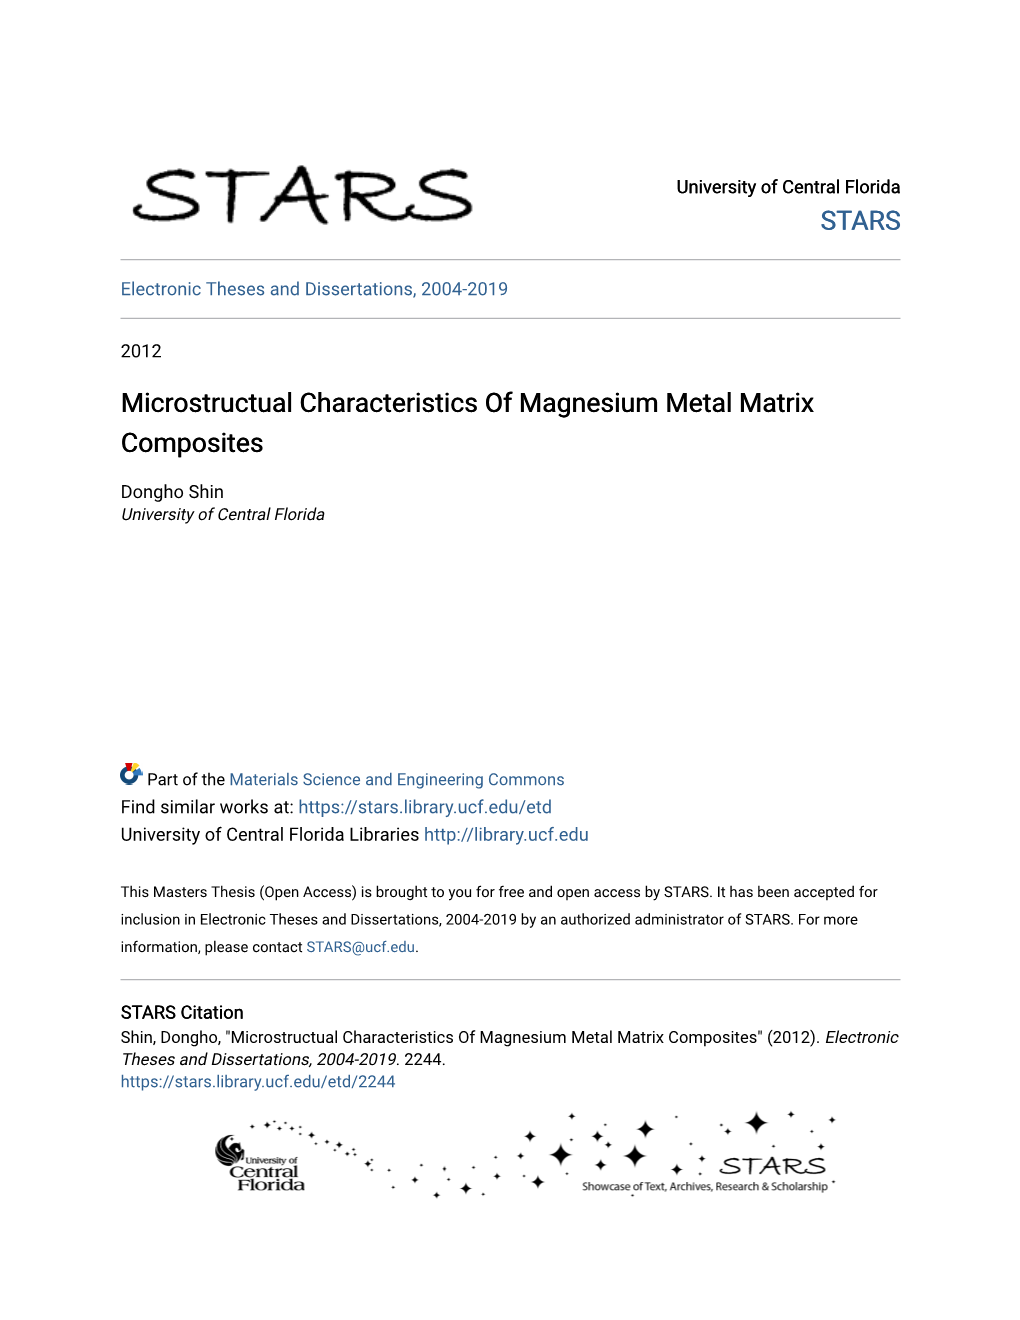 Microstructual Characteristics of Magnesium Metal Matrix Composites